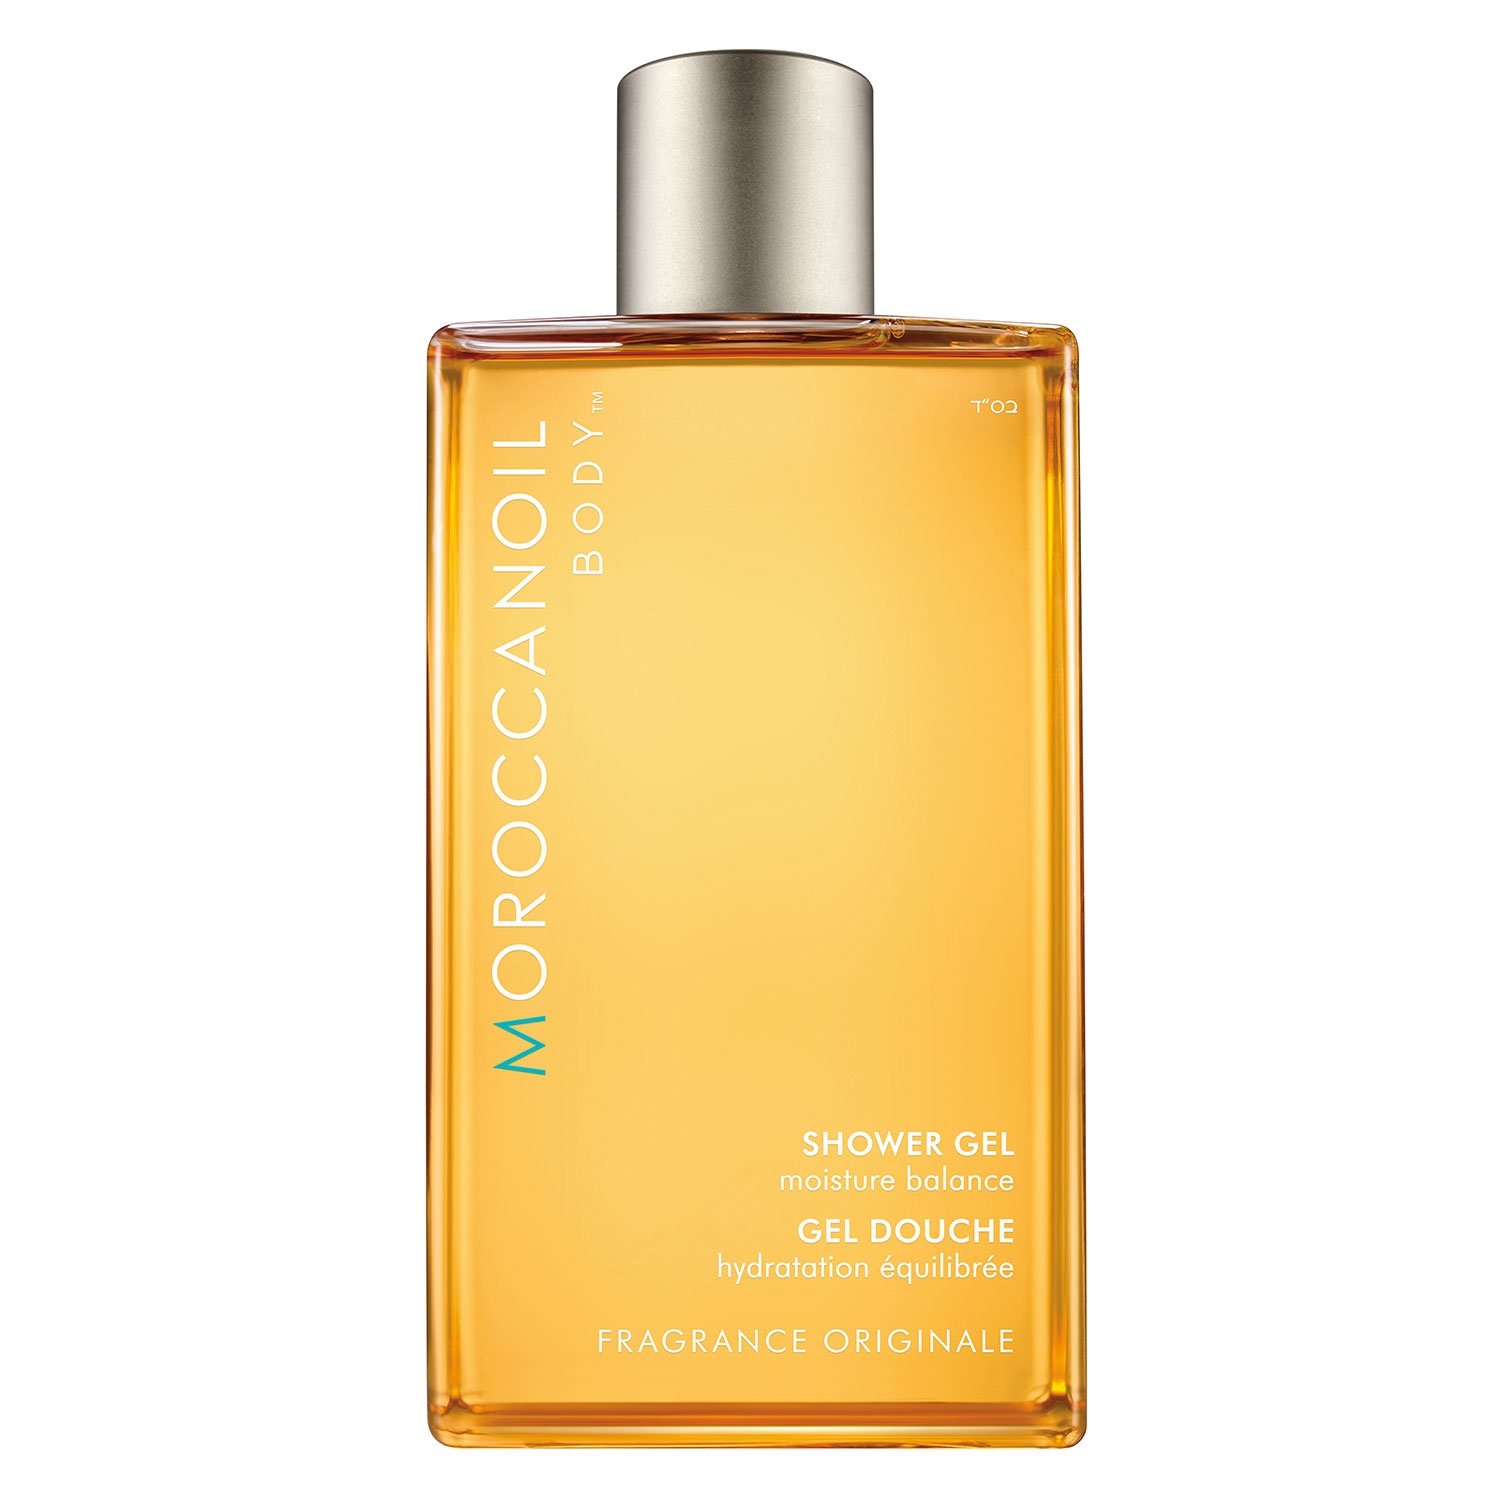 Produktbild von Moroccanoil Body - Shower Gel Fragrance Originale